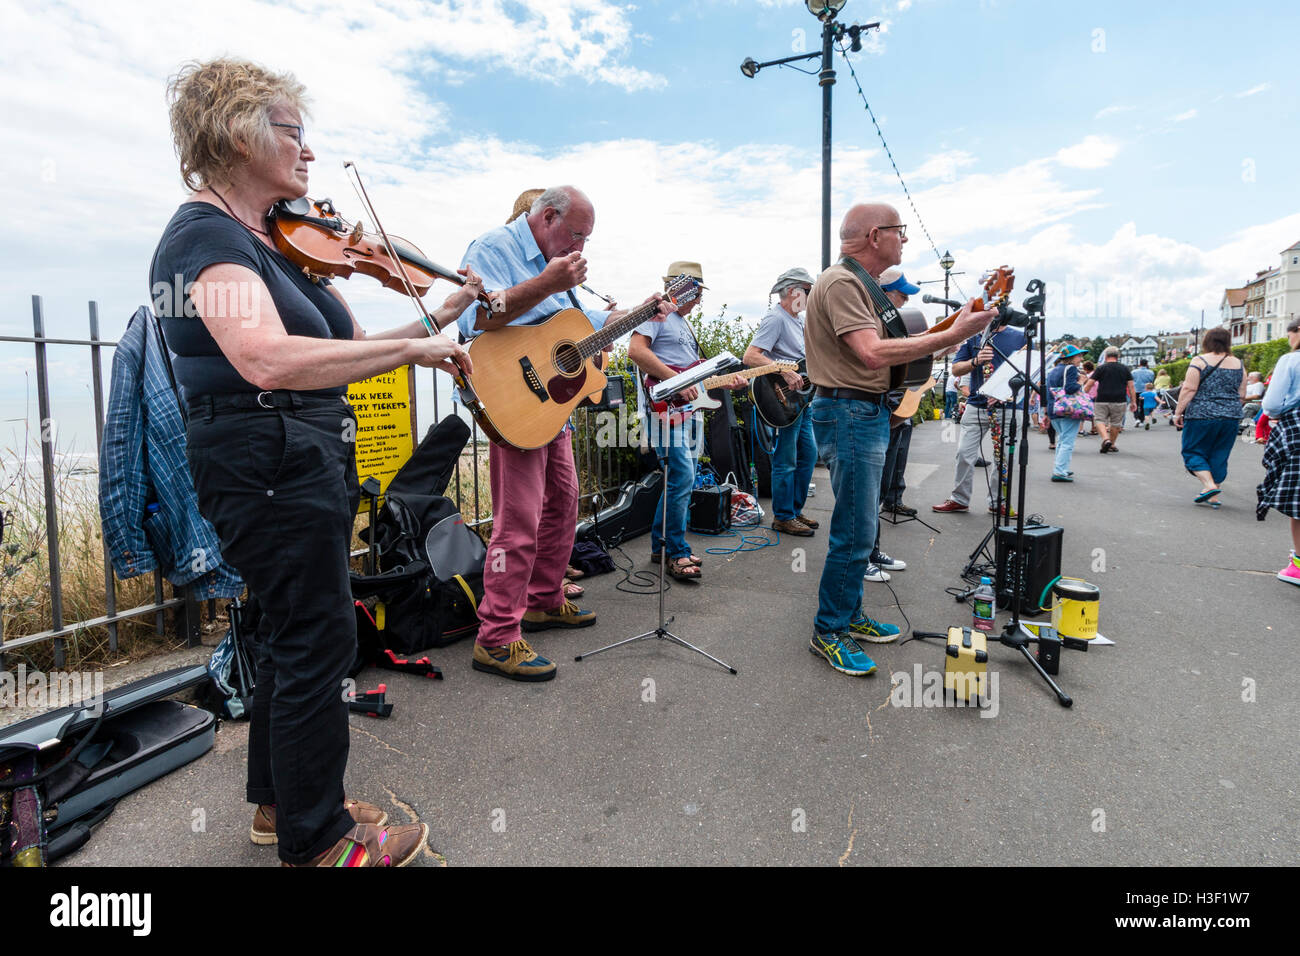 Die Bucht Jungs, Musical folk Gruppe der älteren Männer Gitarren spielen im Sonnenschein, zusammen mit einer Frau Fiddle Player führen Sie ein Konzert auf der Strandpromenade. Stockfoto